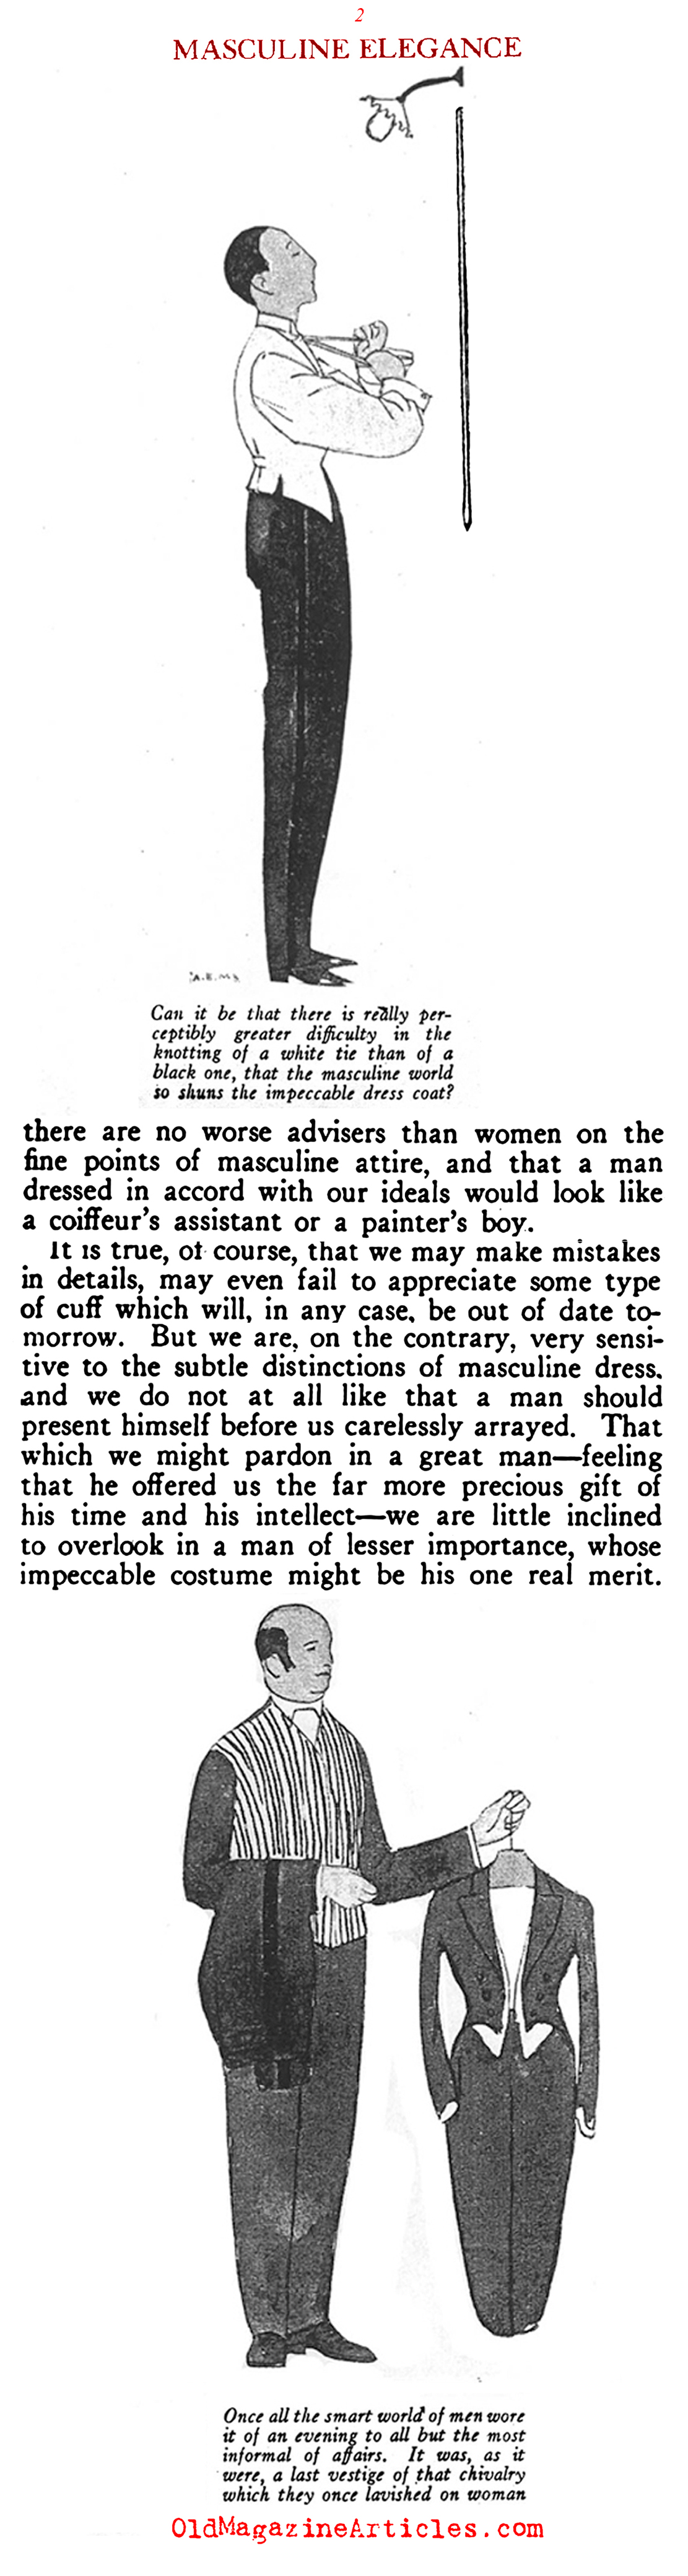 The Decline of Masculine Elegance (Vogue Magazine, 1922)